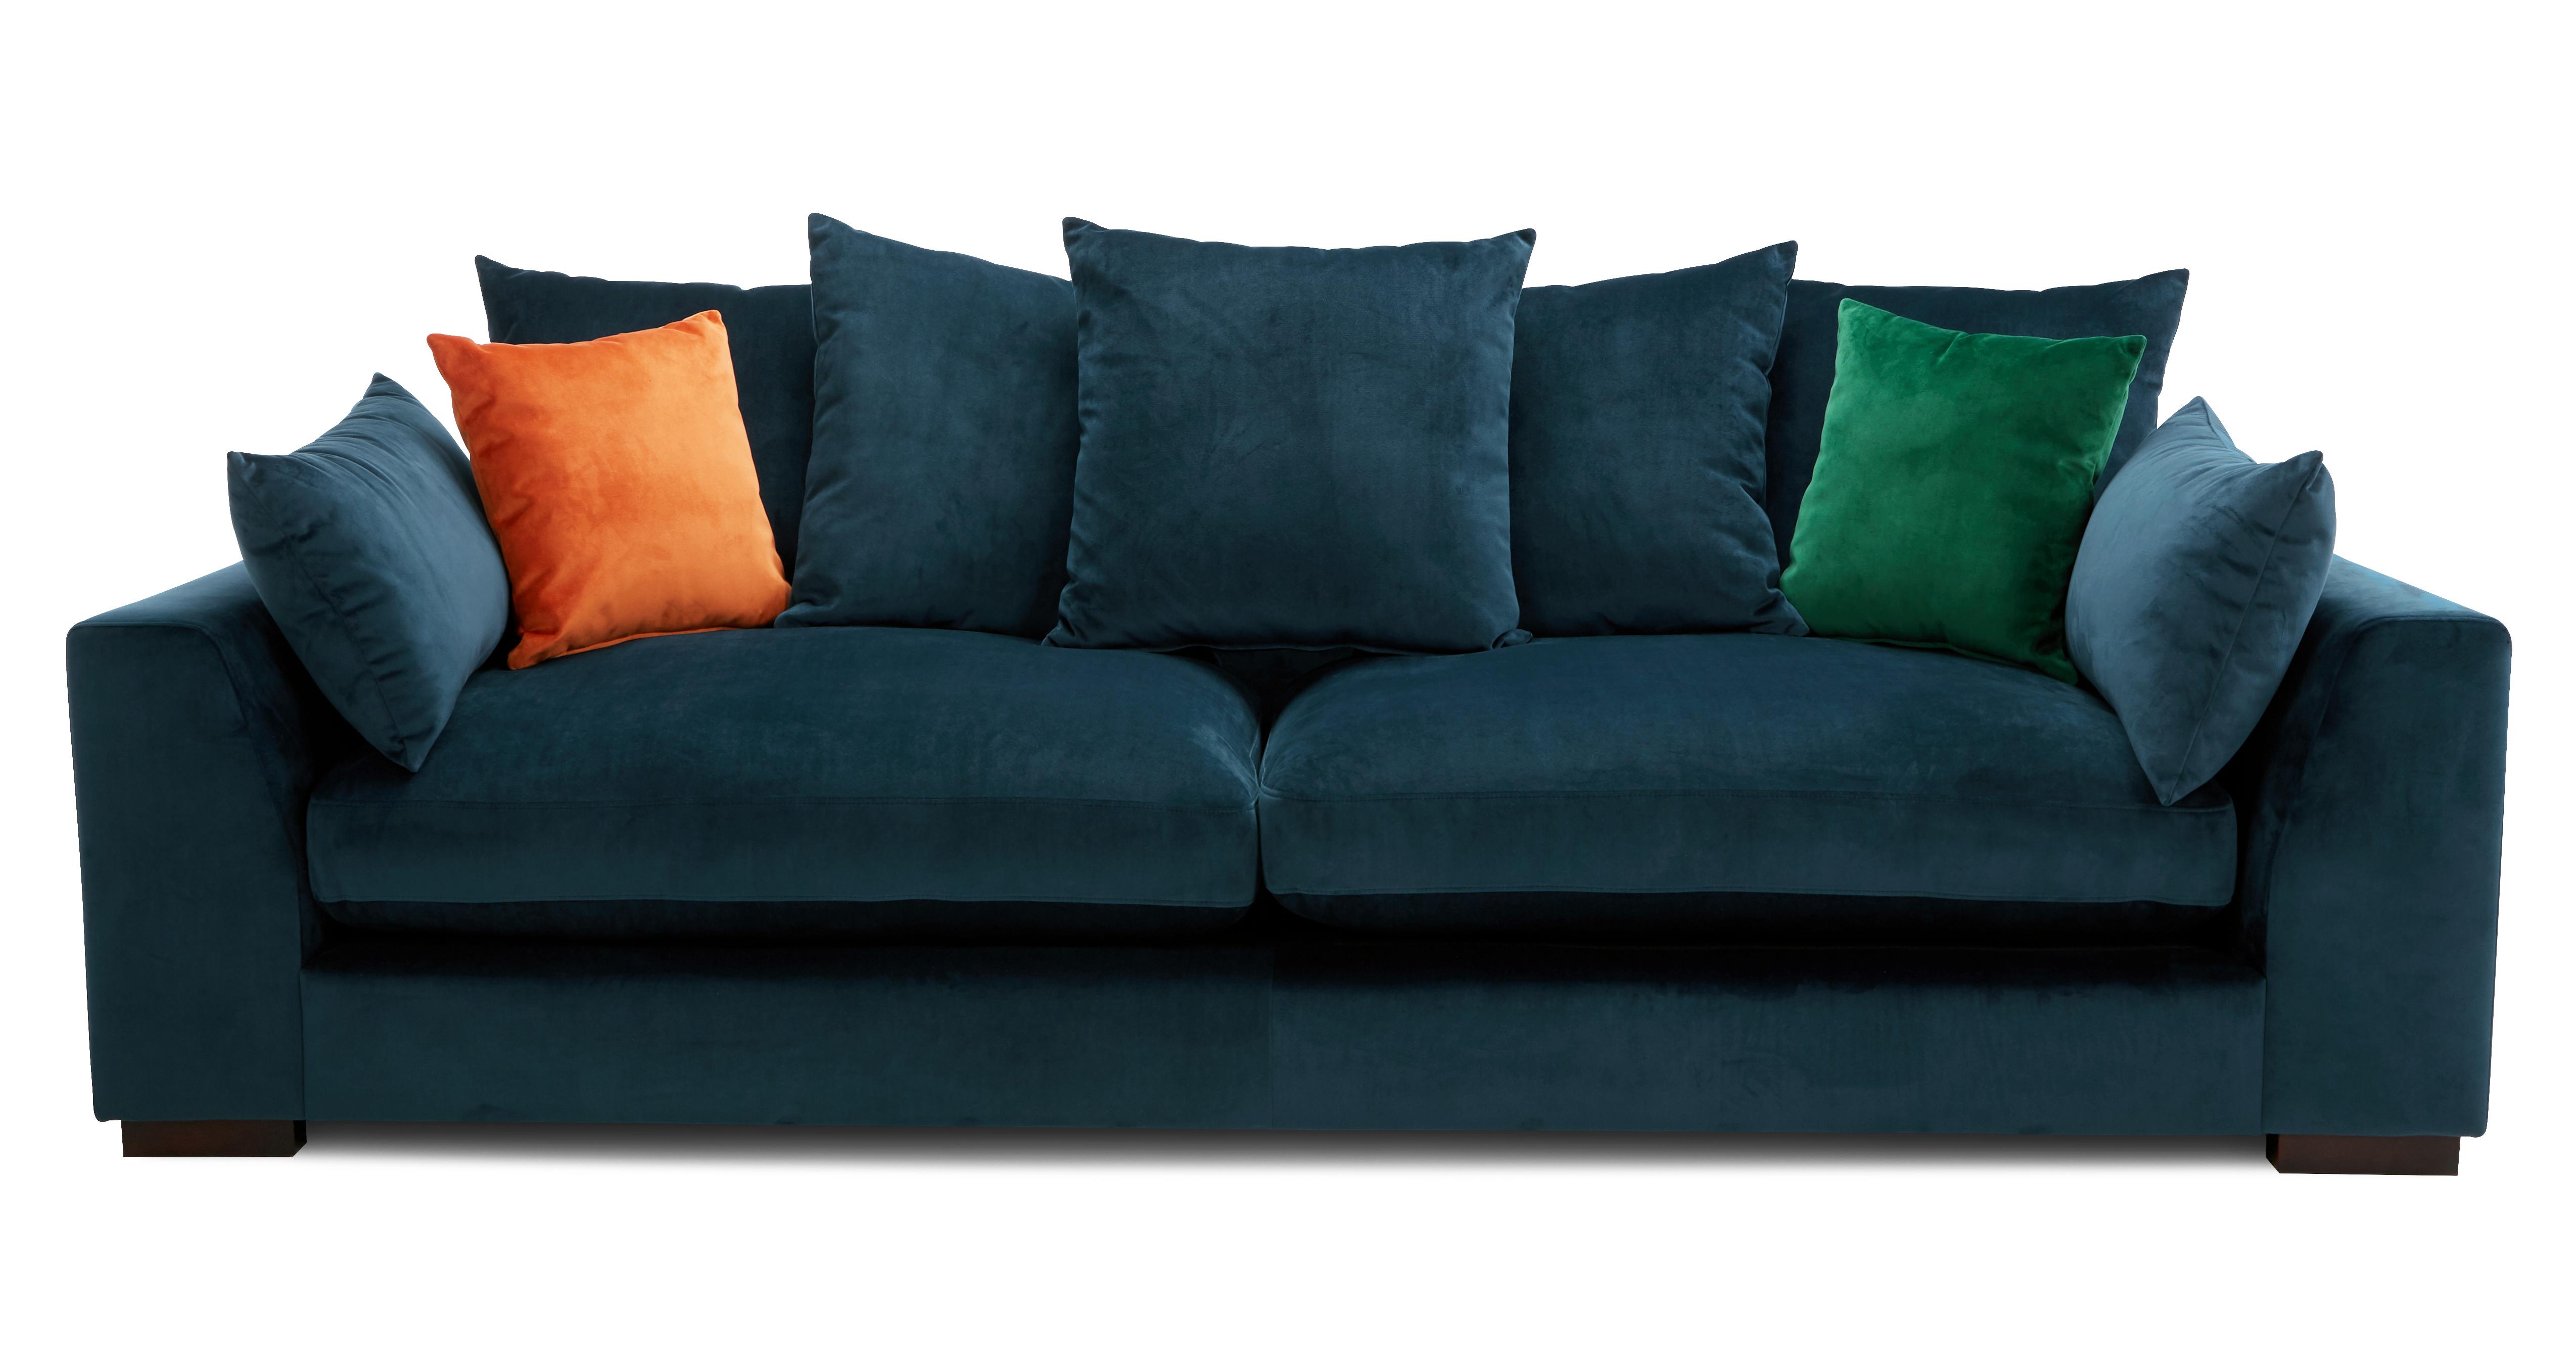 plush berlin sofa bed review